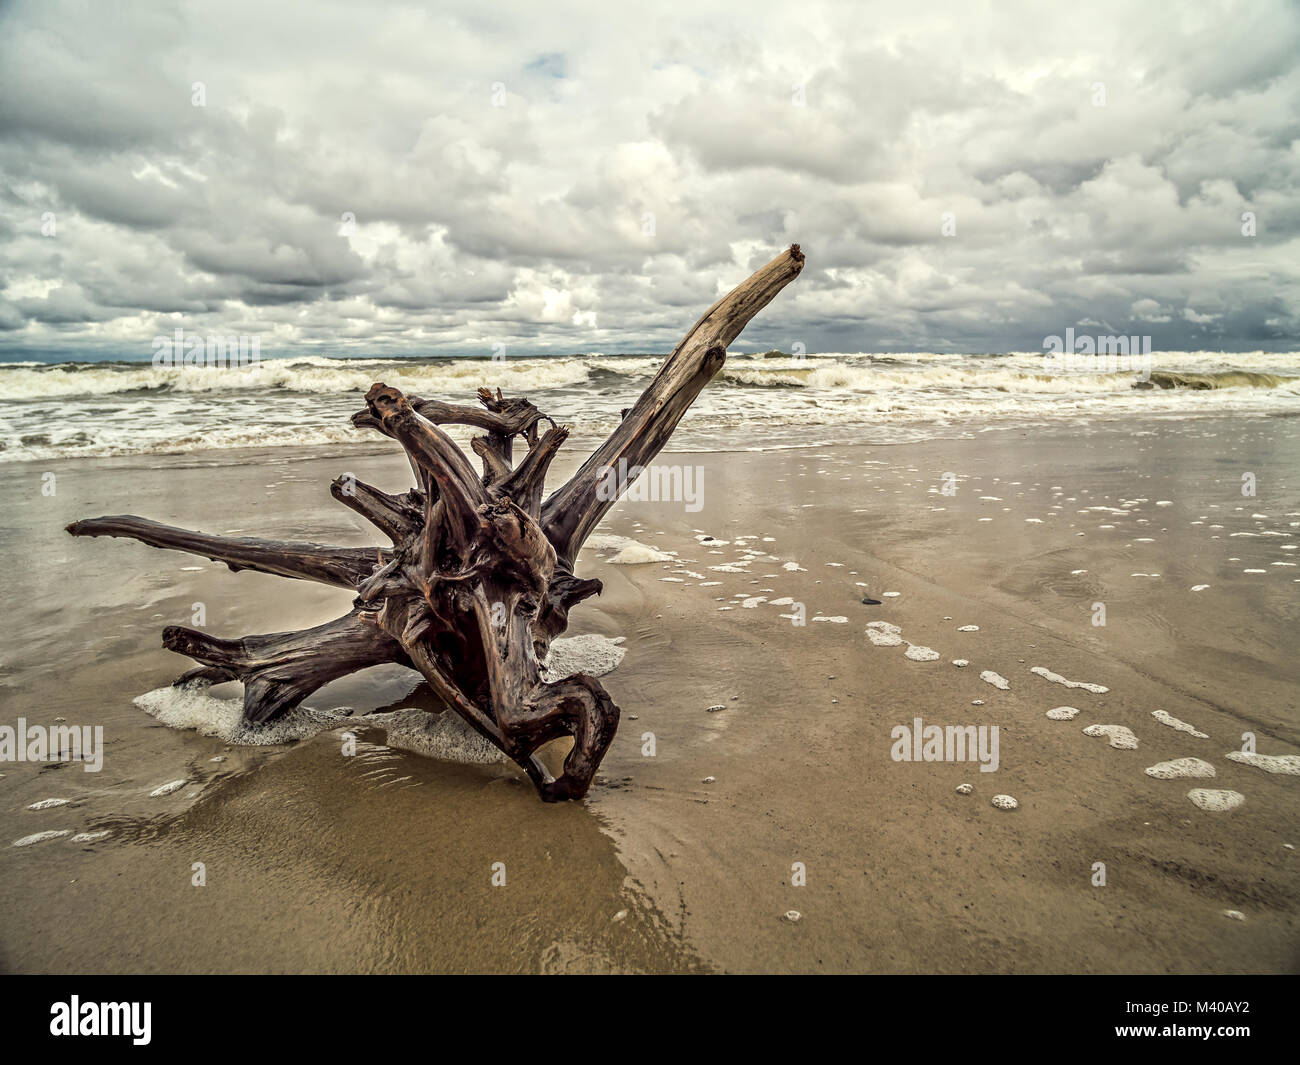 Tree limb washed ashore on wet sand Stock Photo